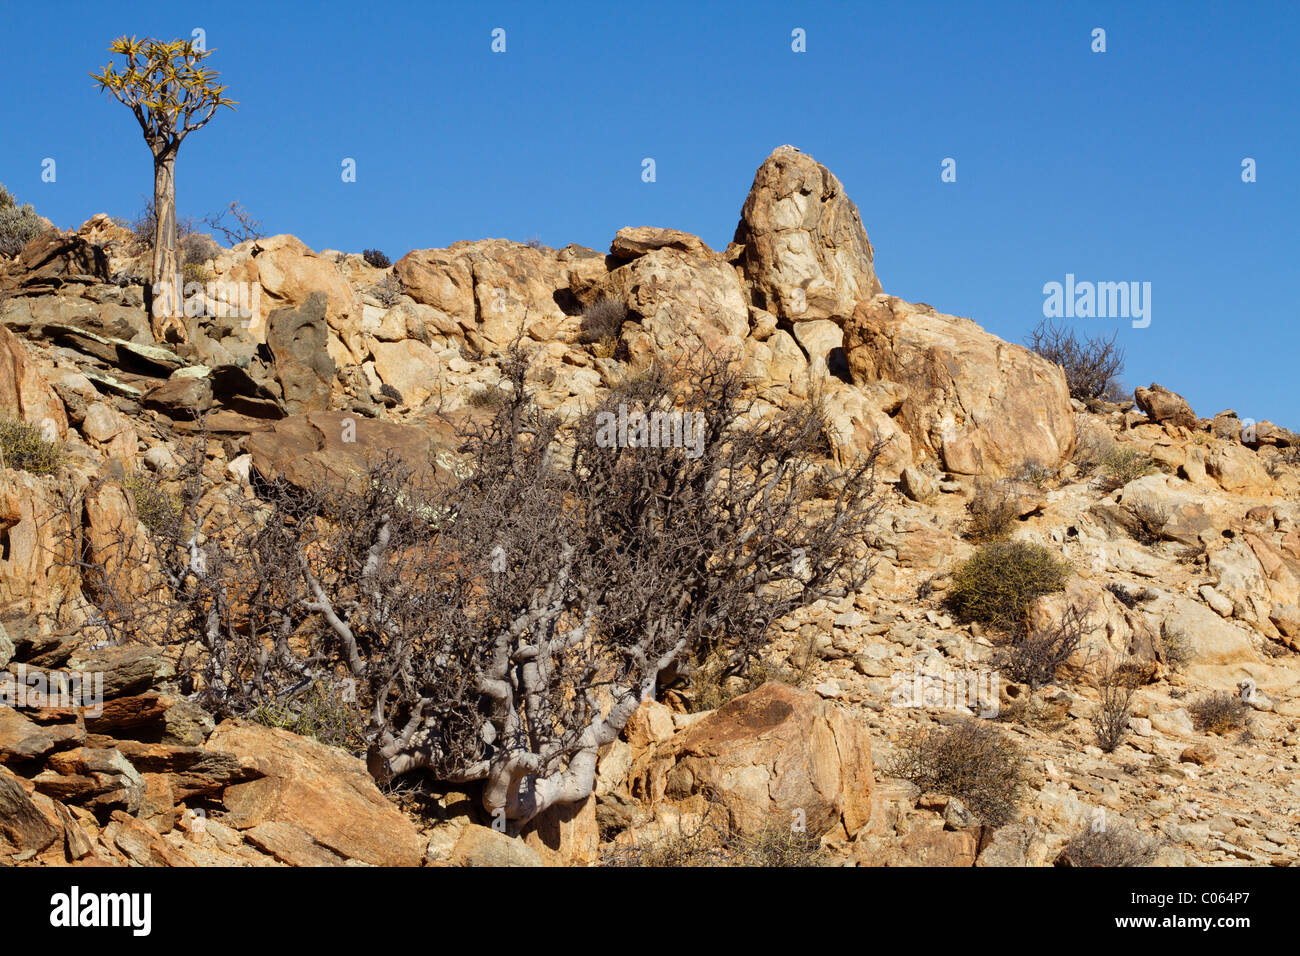 Faretra tree sul promontorio roccioso in Namibia Foto Stock